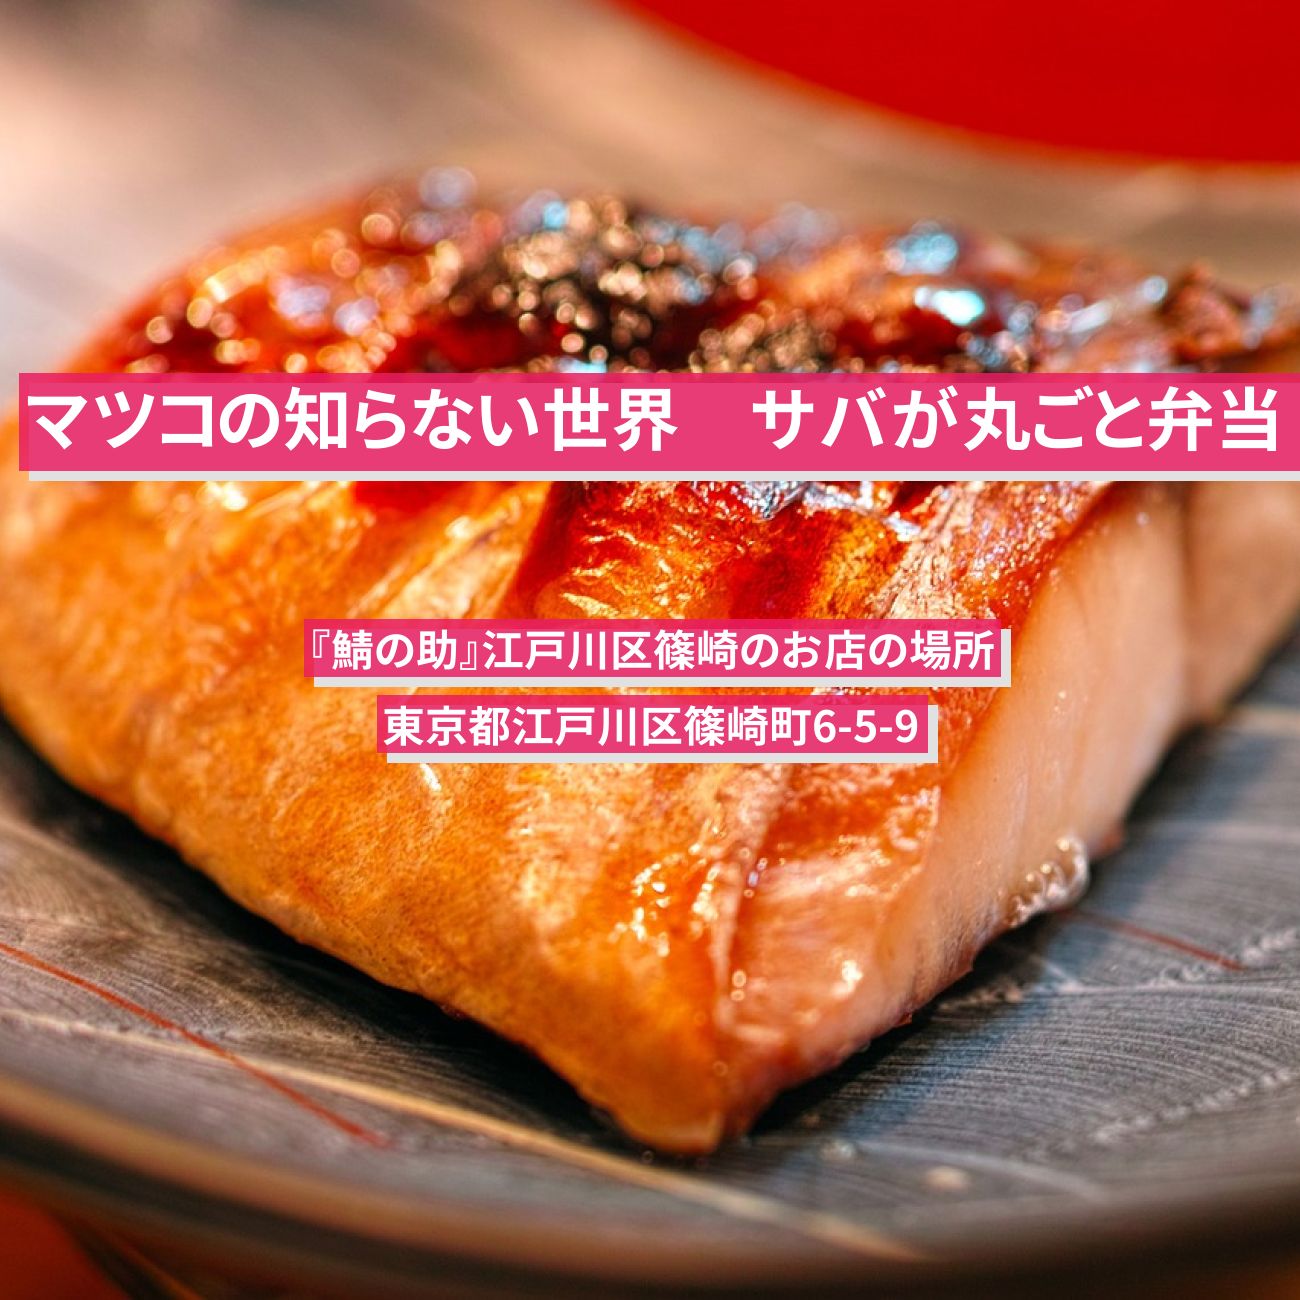 【マツコの知らない世界】サバが丸ごと弁当『鯖の助』江戸川区篠崎のお店の場所